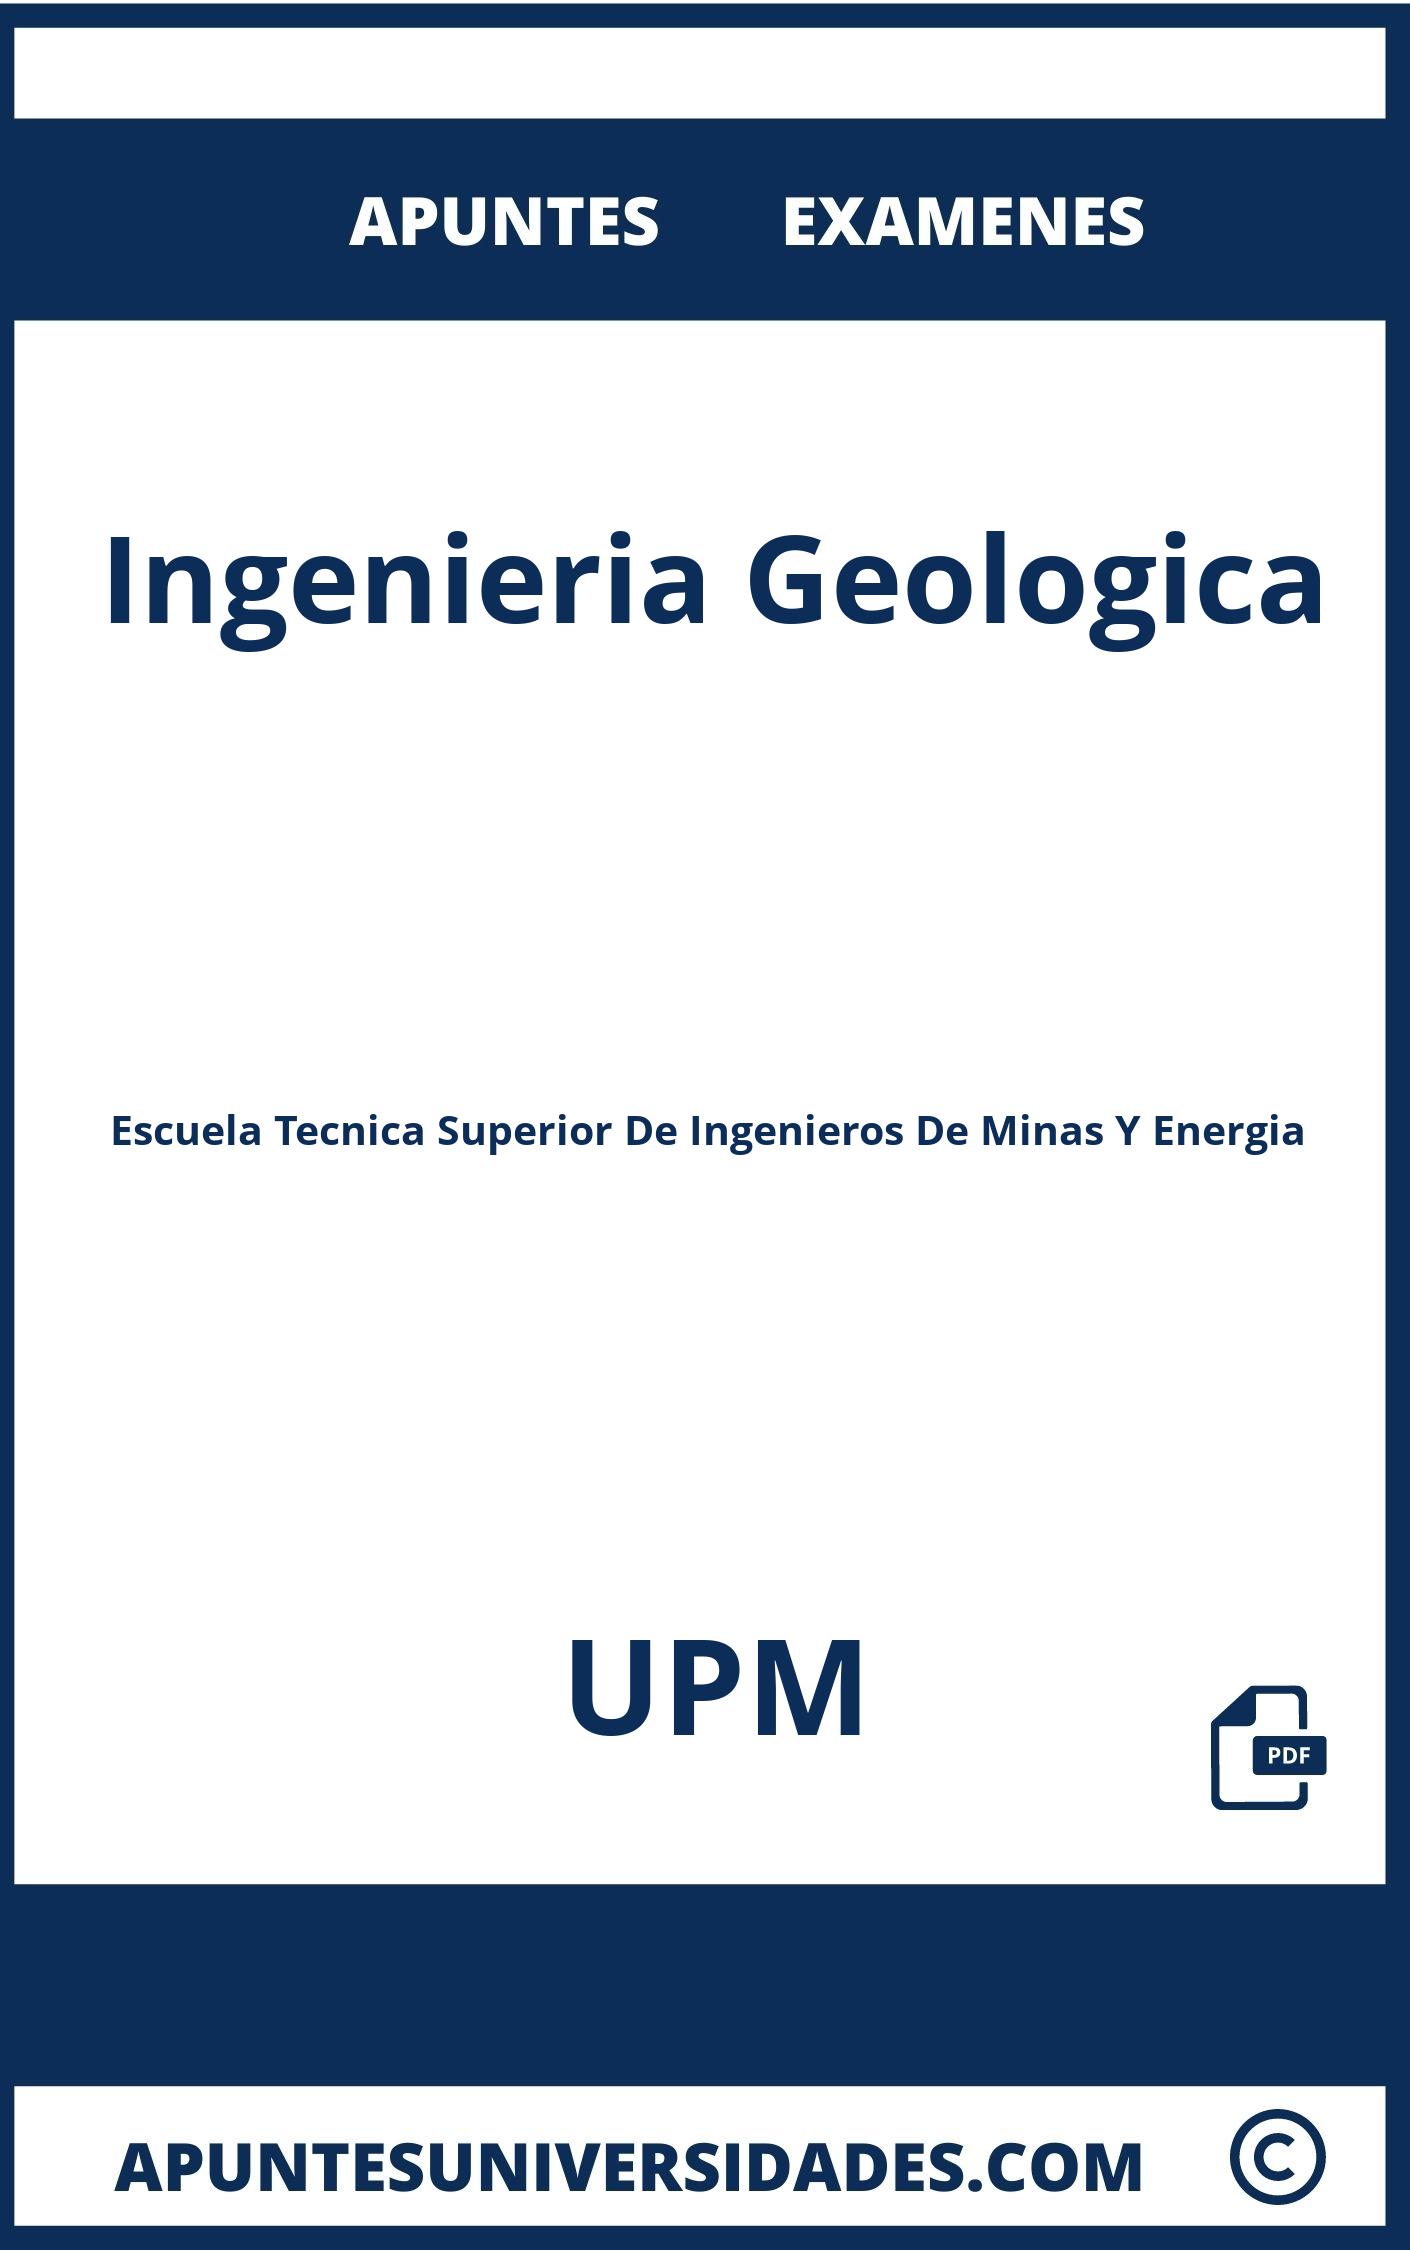 Examenes Apuntes Ingenieria Geologica UPM